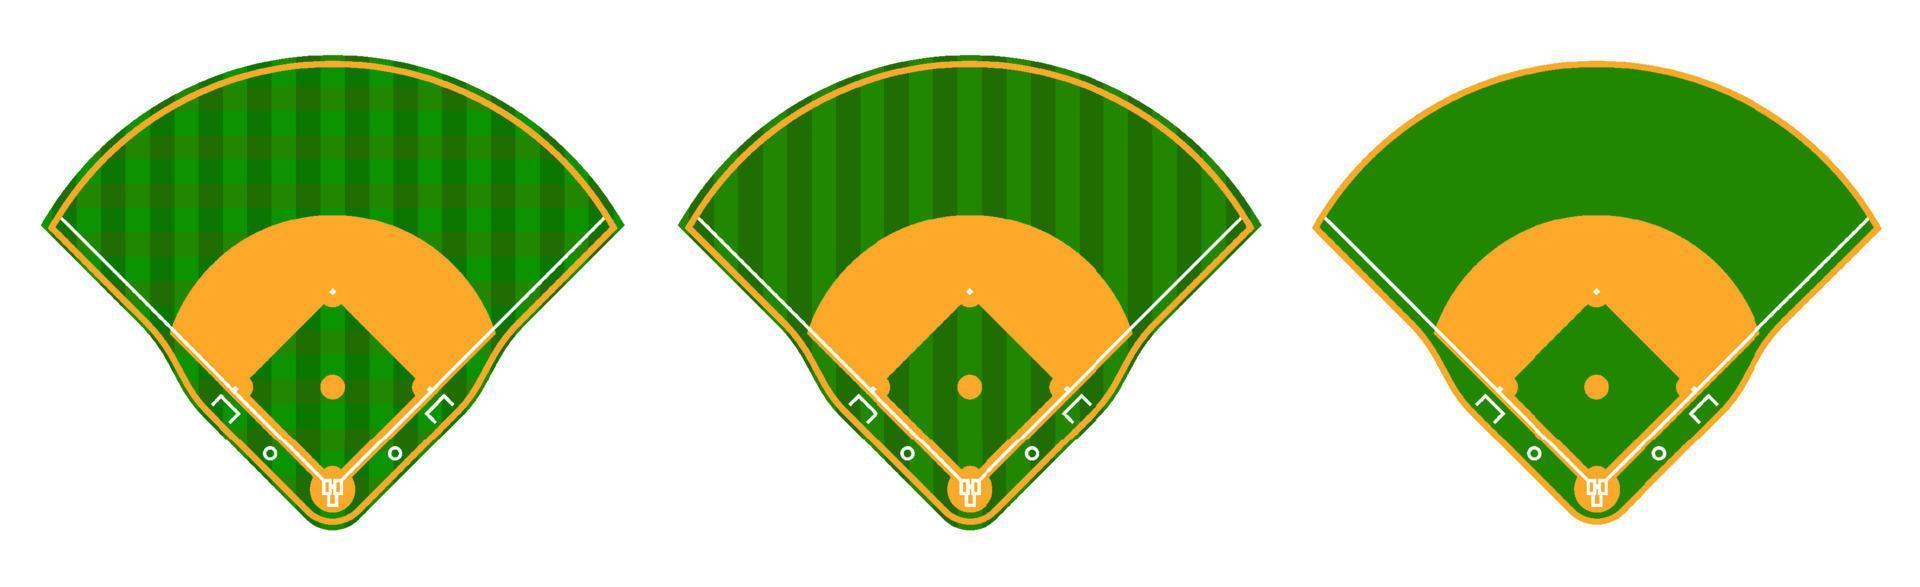 conjunto de campos de beisebol verdes com linhas de marcação. esportes de equipe. estilo de vida ativo. esporte nacional americano. vetor